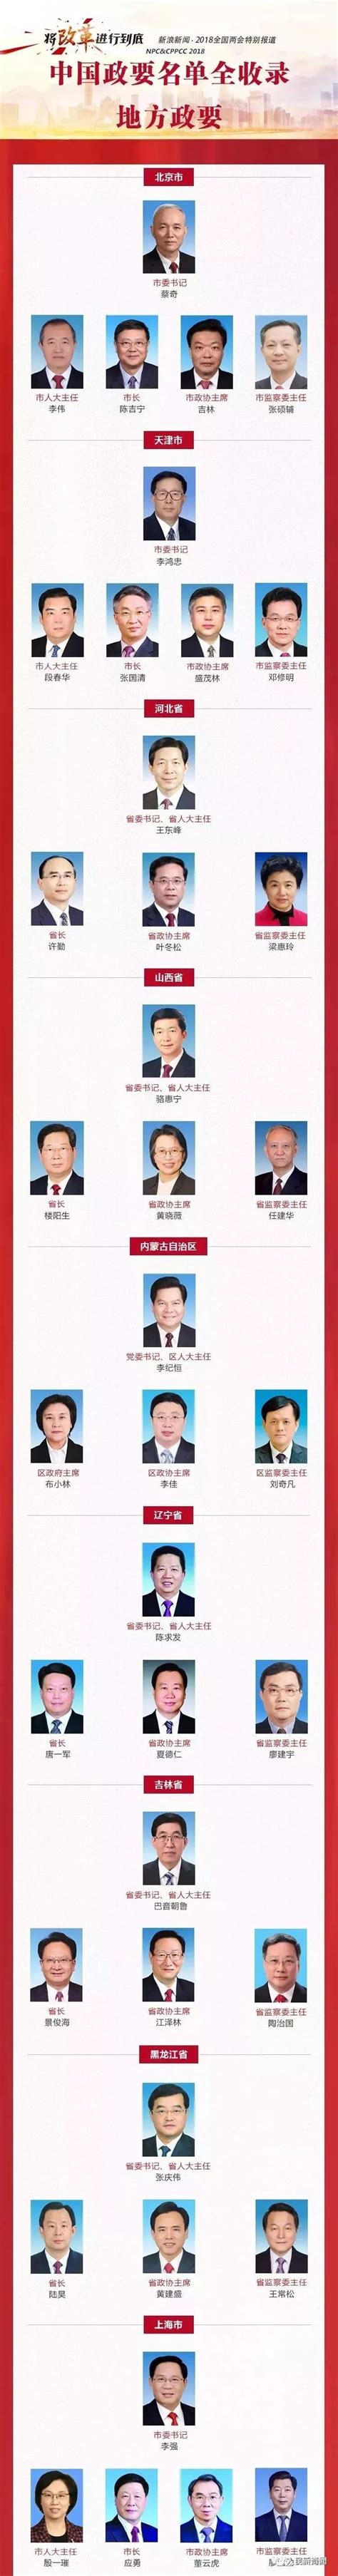 关于中国电器工业协会第六届理事会正副会长和秘书长候选人的公示